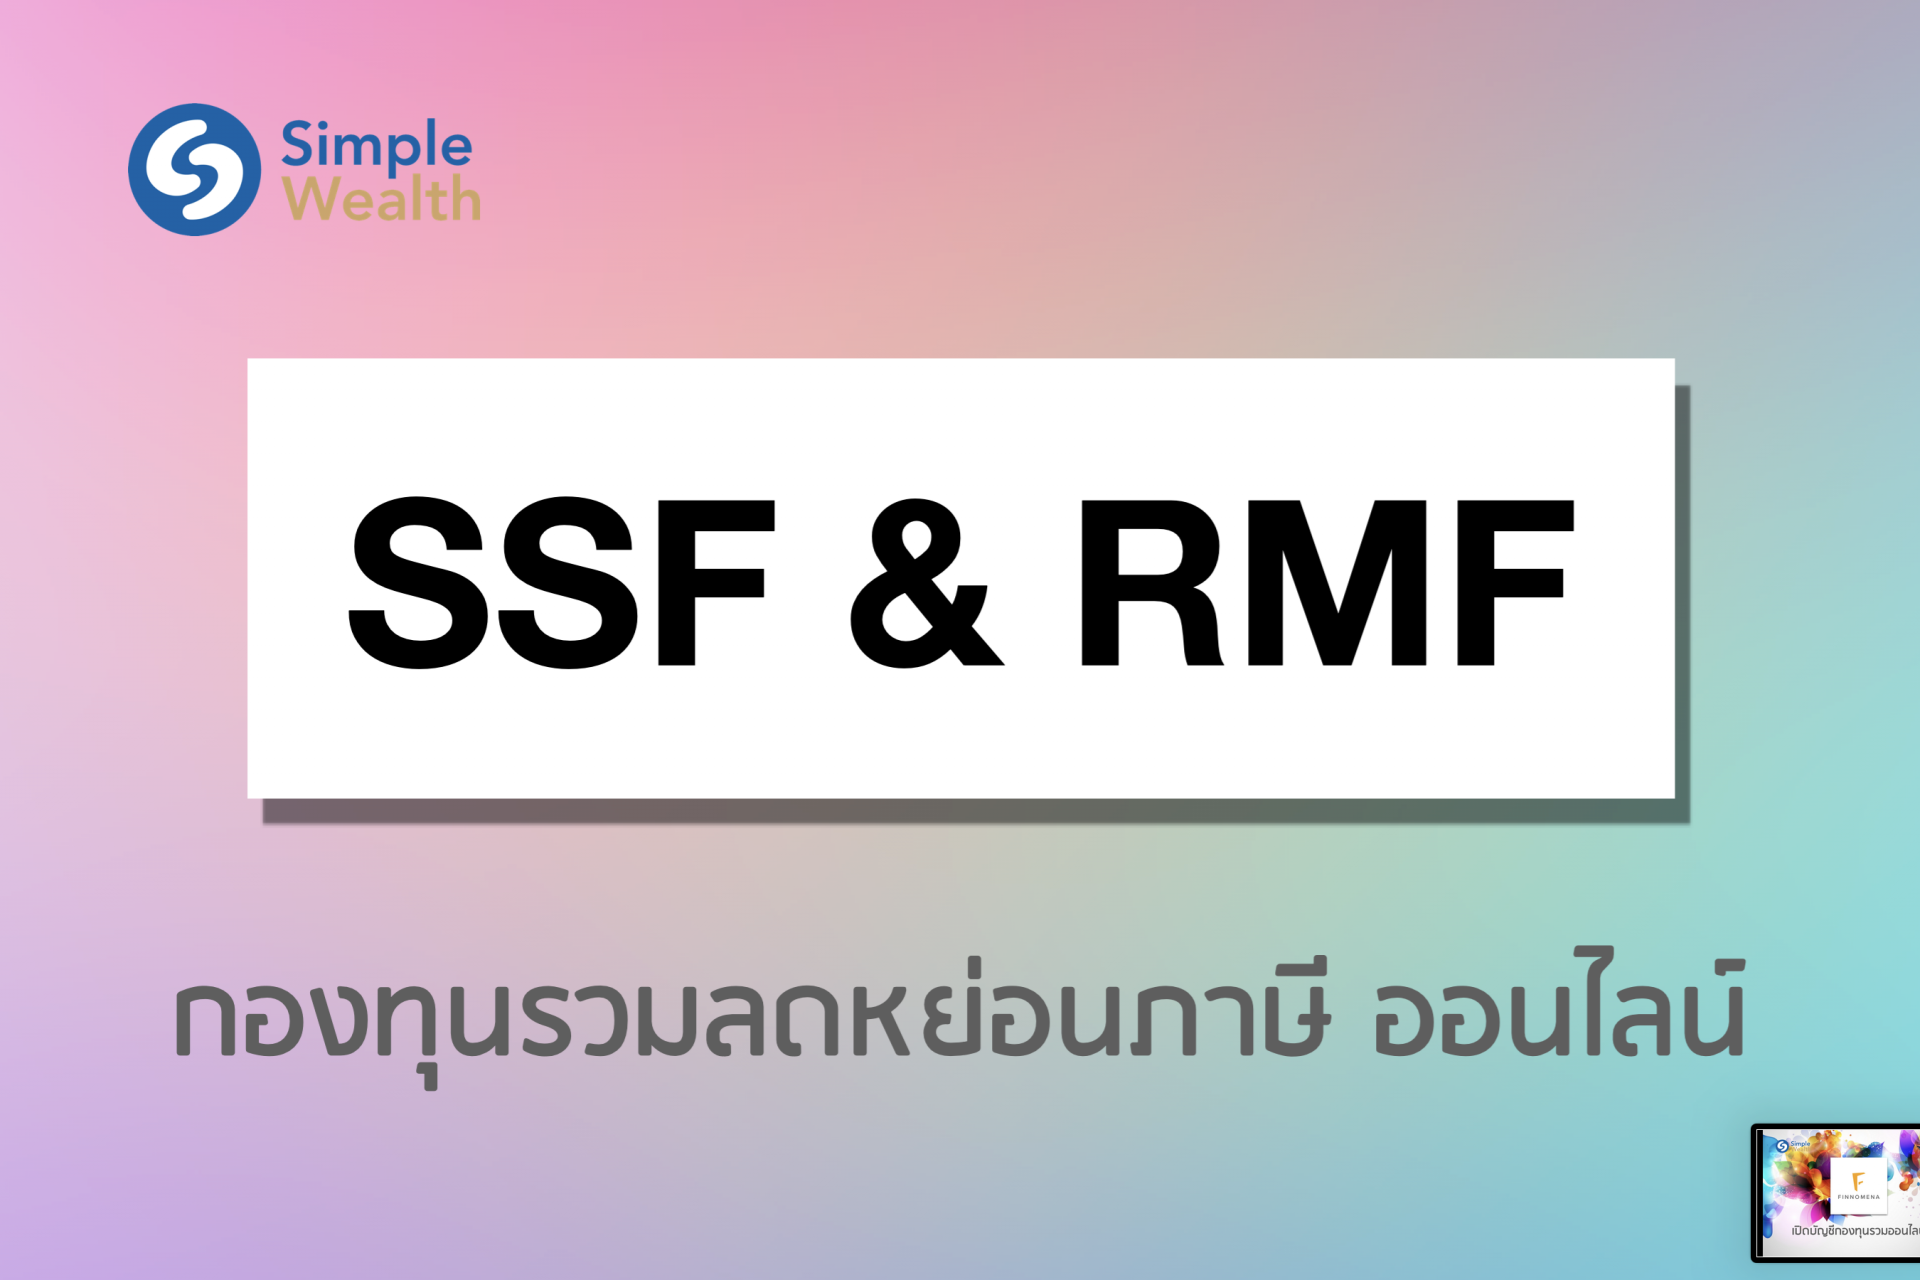 ซื้อกองทุนรวม SSF / RMF ลดหย่อนภาษี ผ่านช่องทางออนไลน์